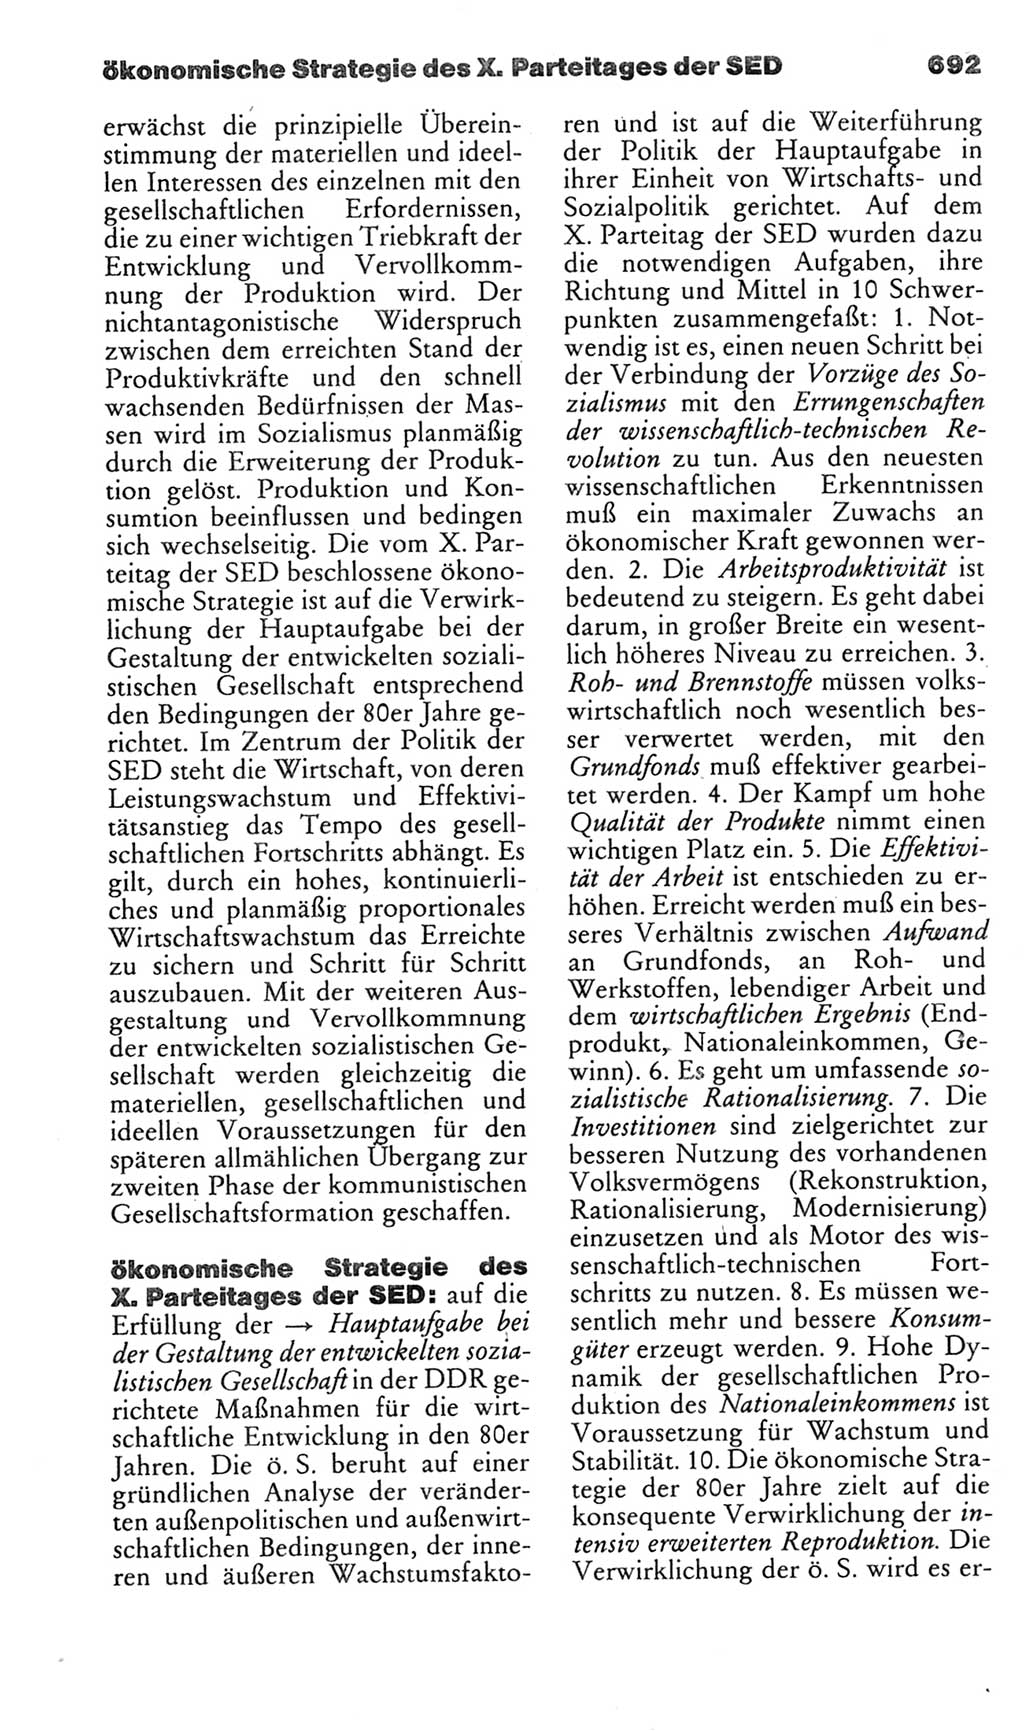 Kleines politisches Wörterbuch [Deutsche Demokratische Republik (DDR)] 1985, Seite 692 (Kl. pol. Wb. DDR 1985, S. 692)